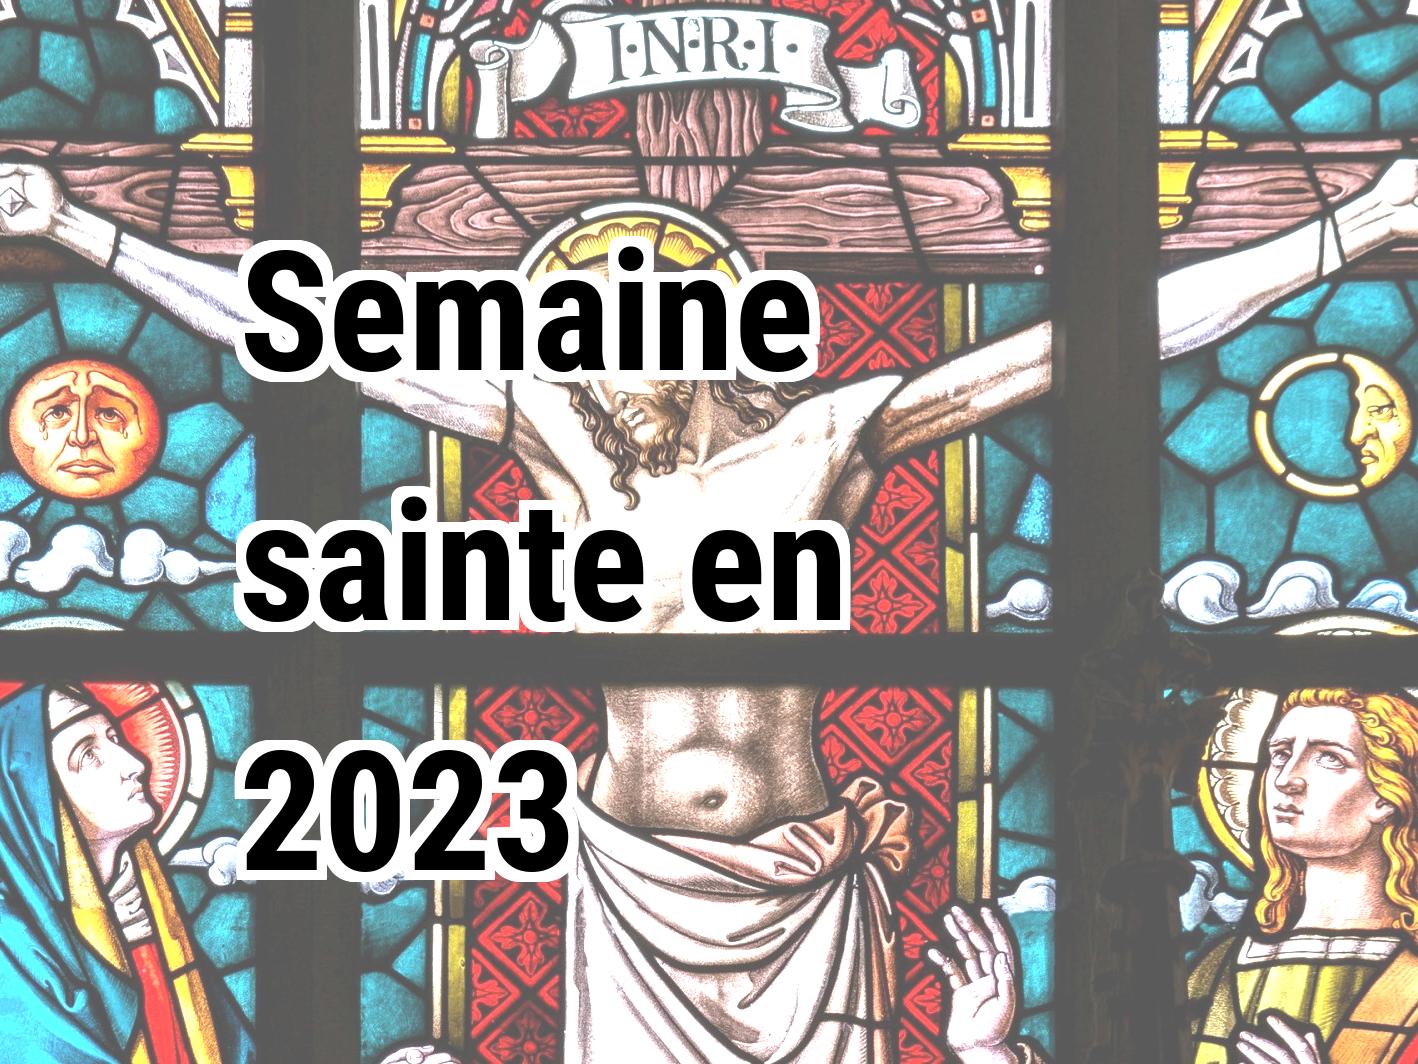 sainte tour 2023